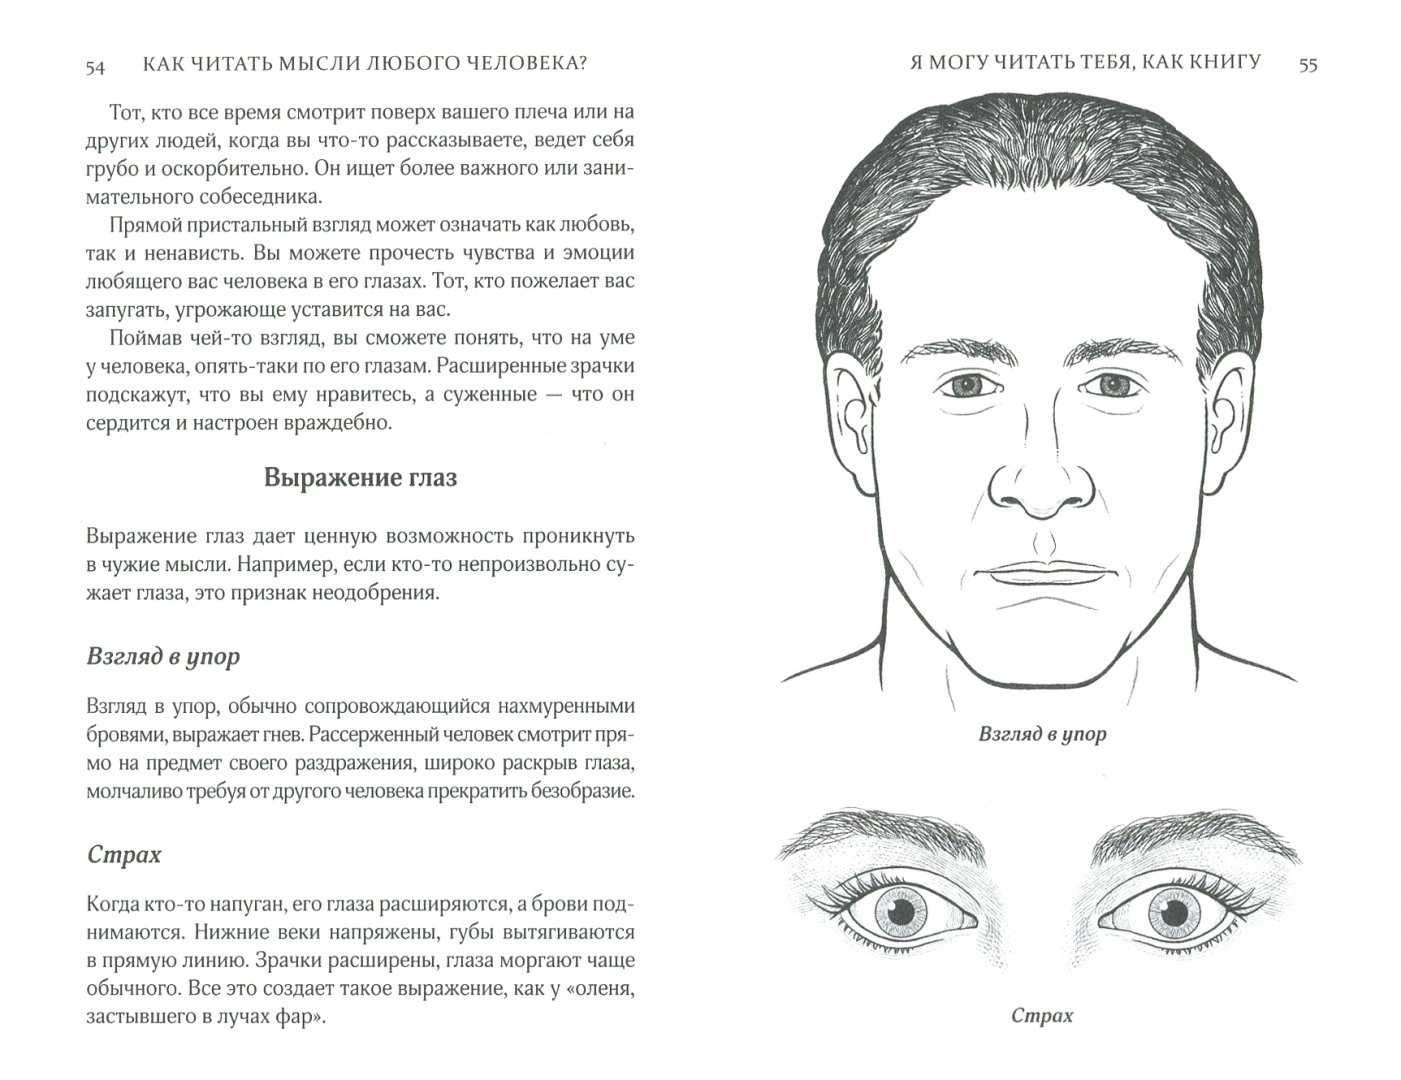 Читать мысли возможно. Посадка глаз физиогномика. Определение характера по чертам лица. Физиогномика человека. Черты лица человека.